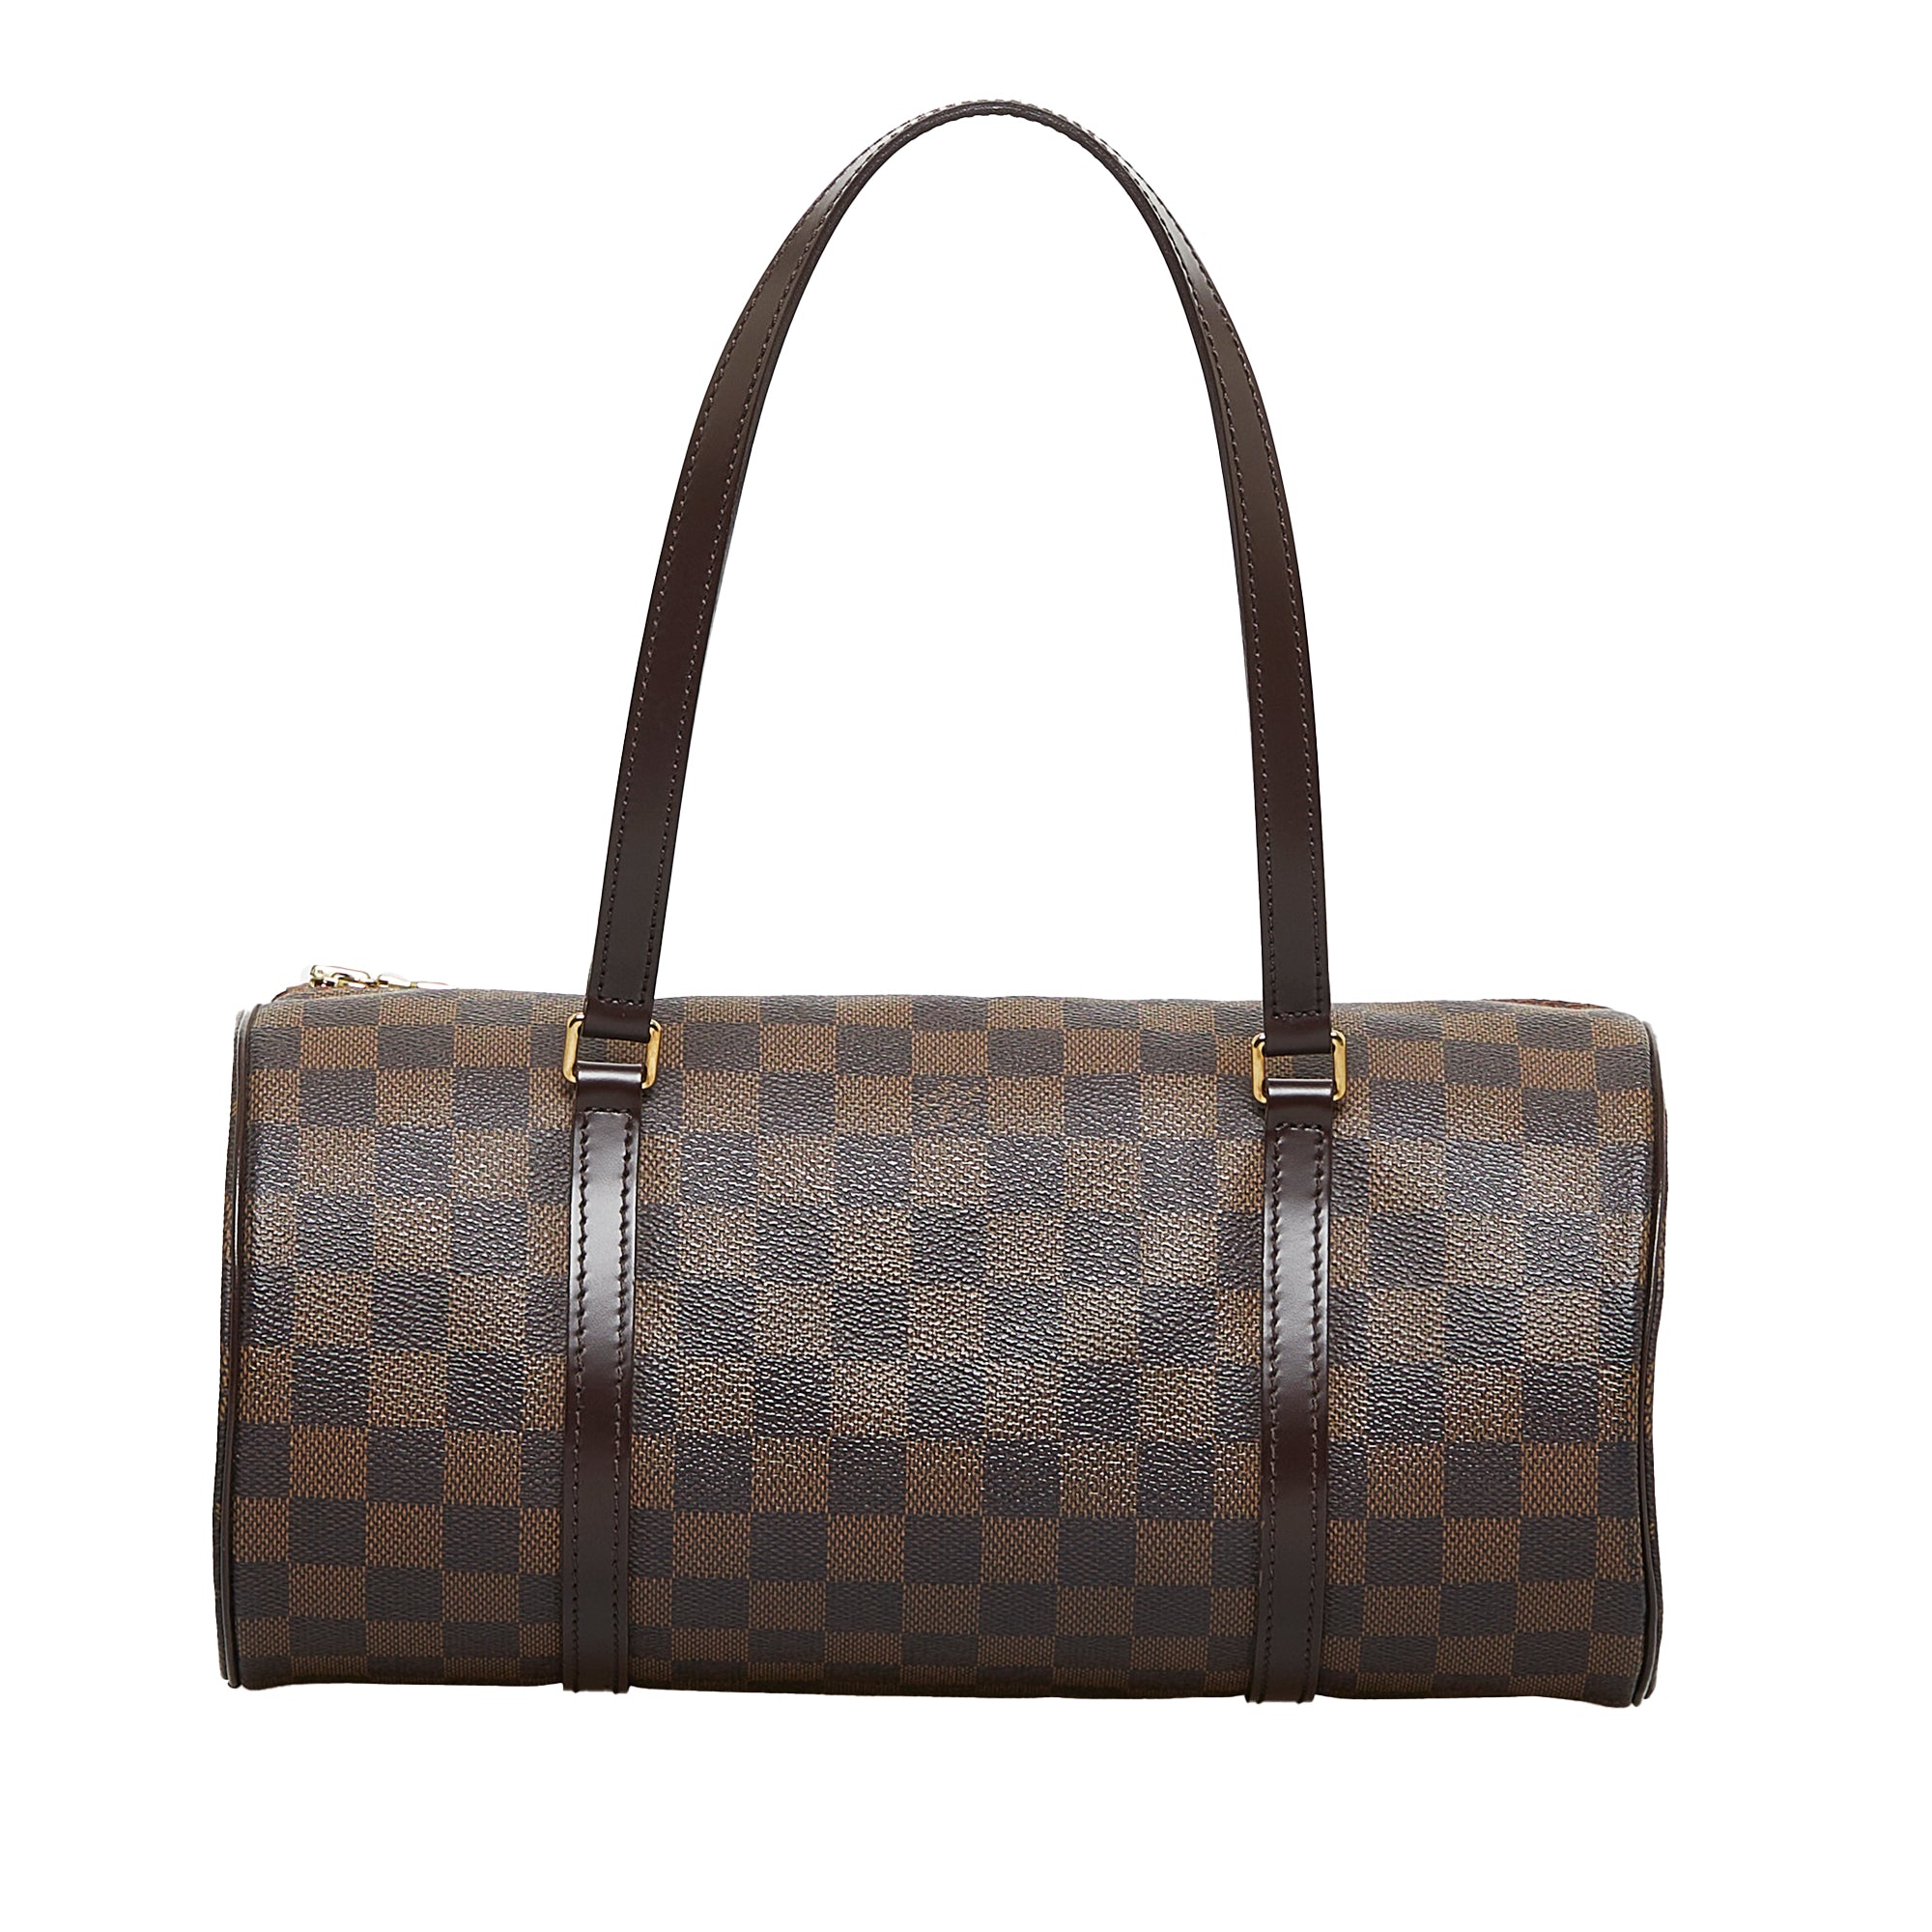 Brown Louis Vuitton Damier Ebene Papillon Handbag